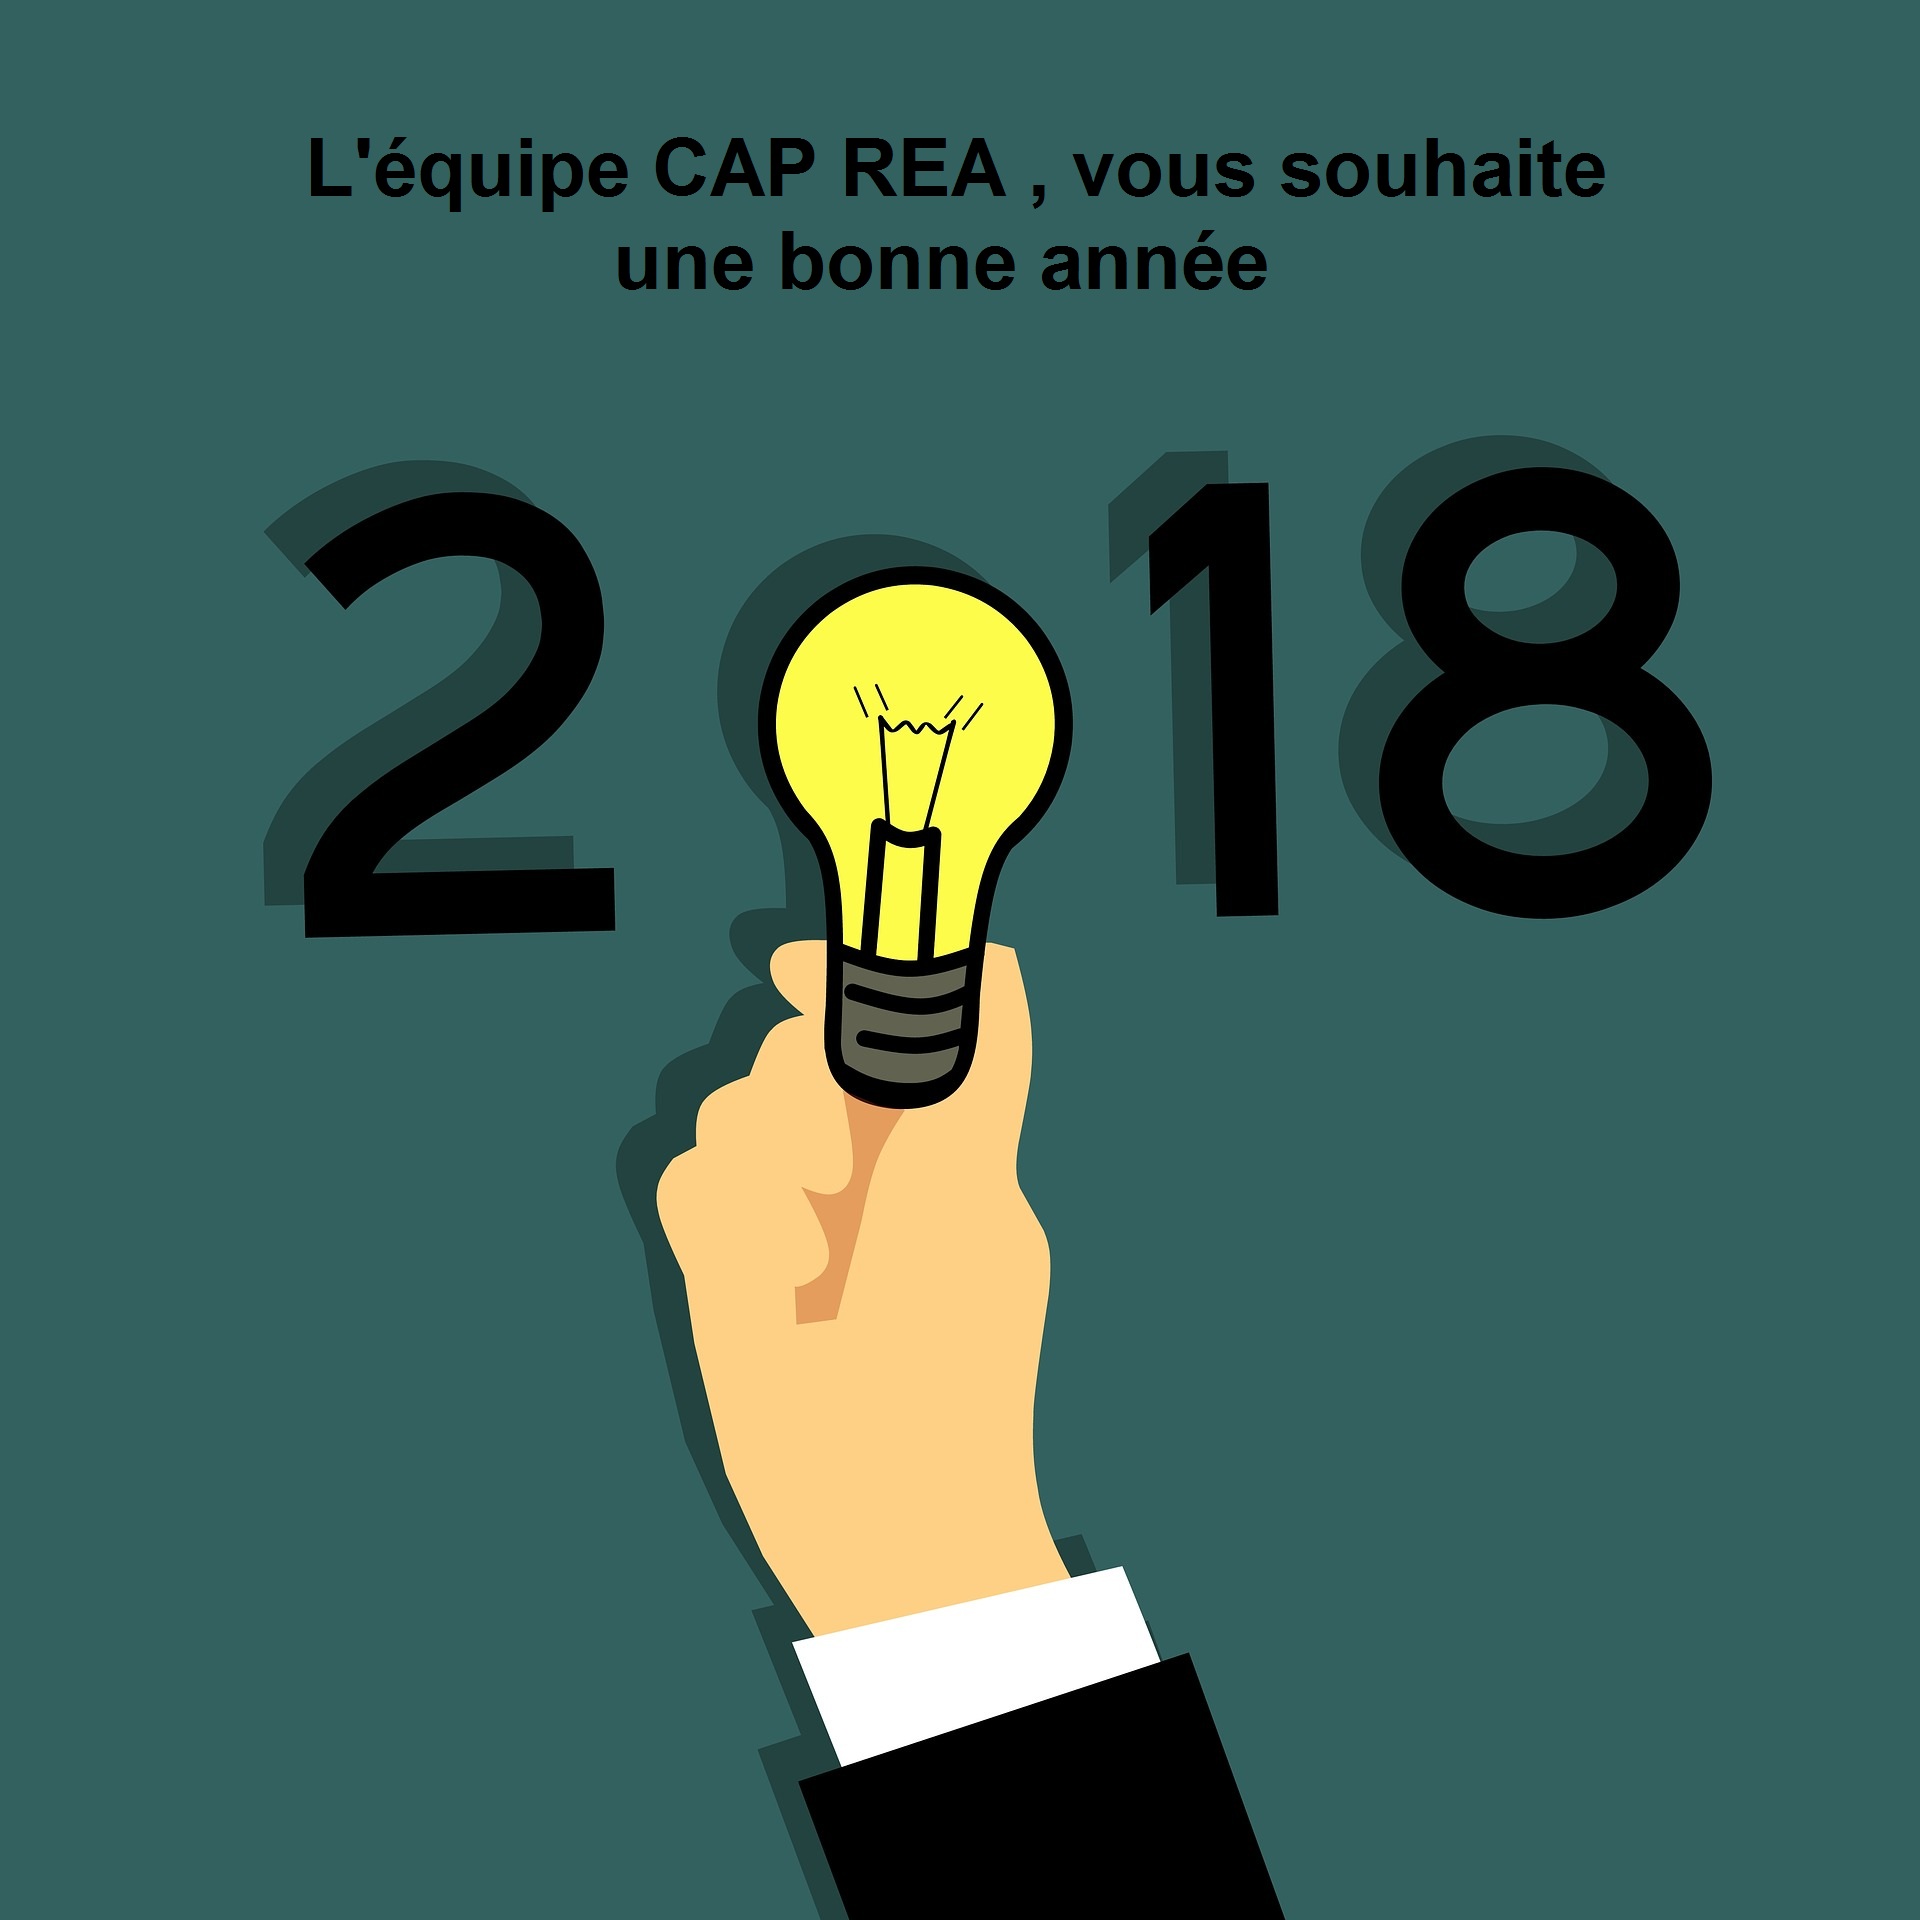 La sarl CAP REA, vous remercie de votre confiance et vous présente ses meilleurs vœux pour l’année 2018.